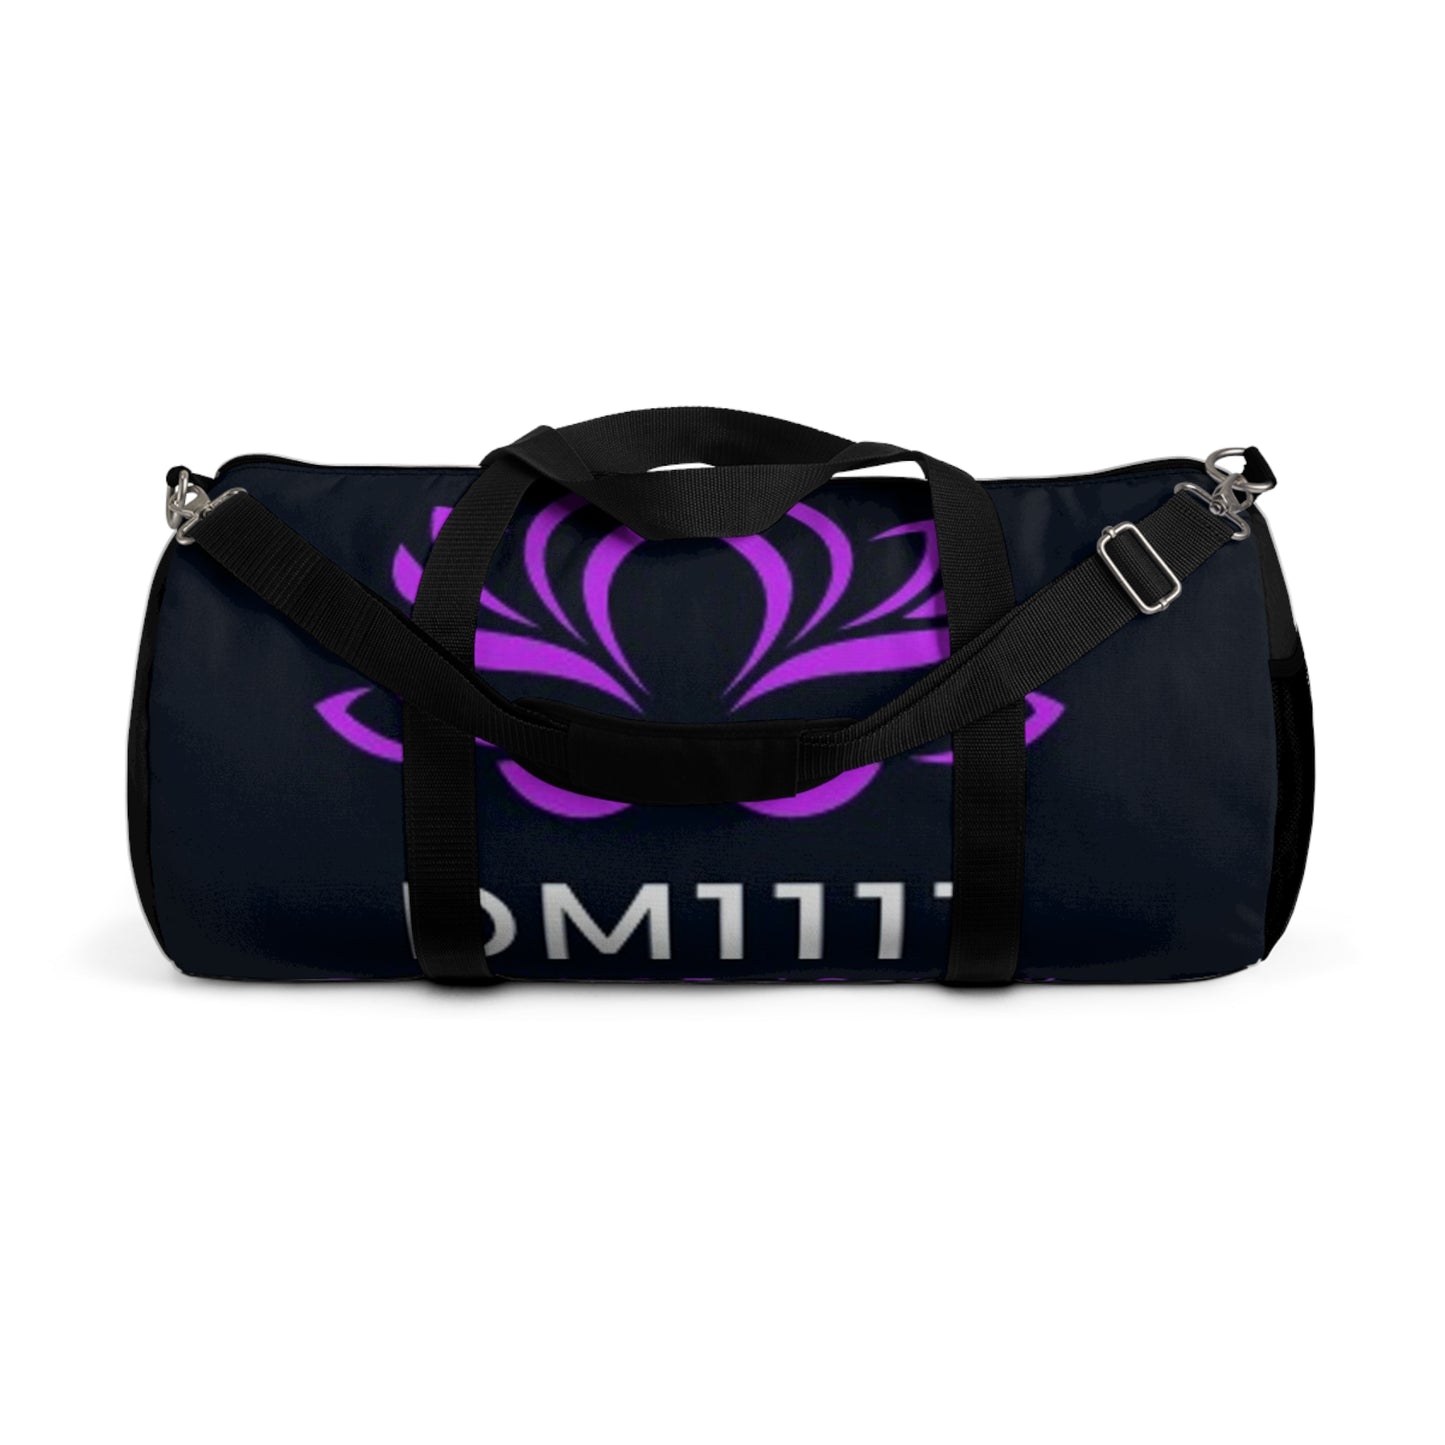 DM1111 Duffel Bag